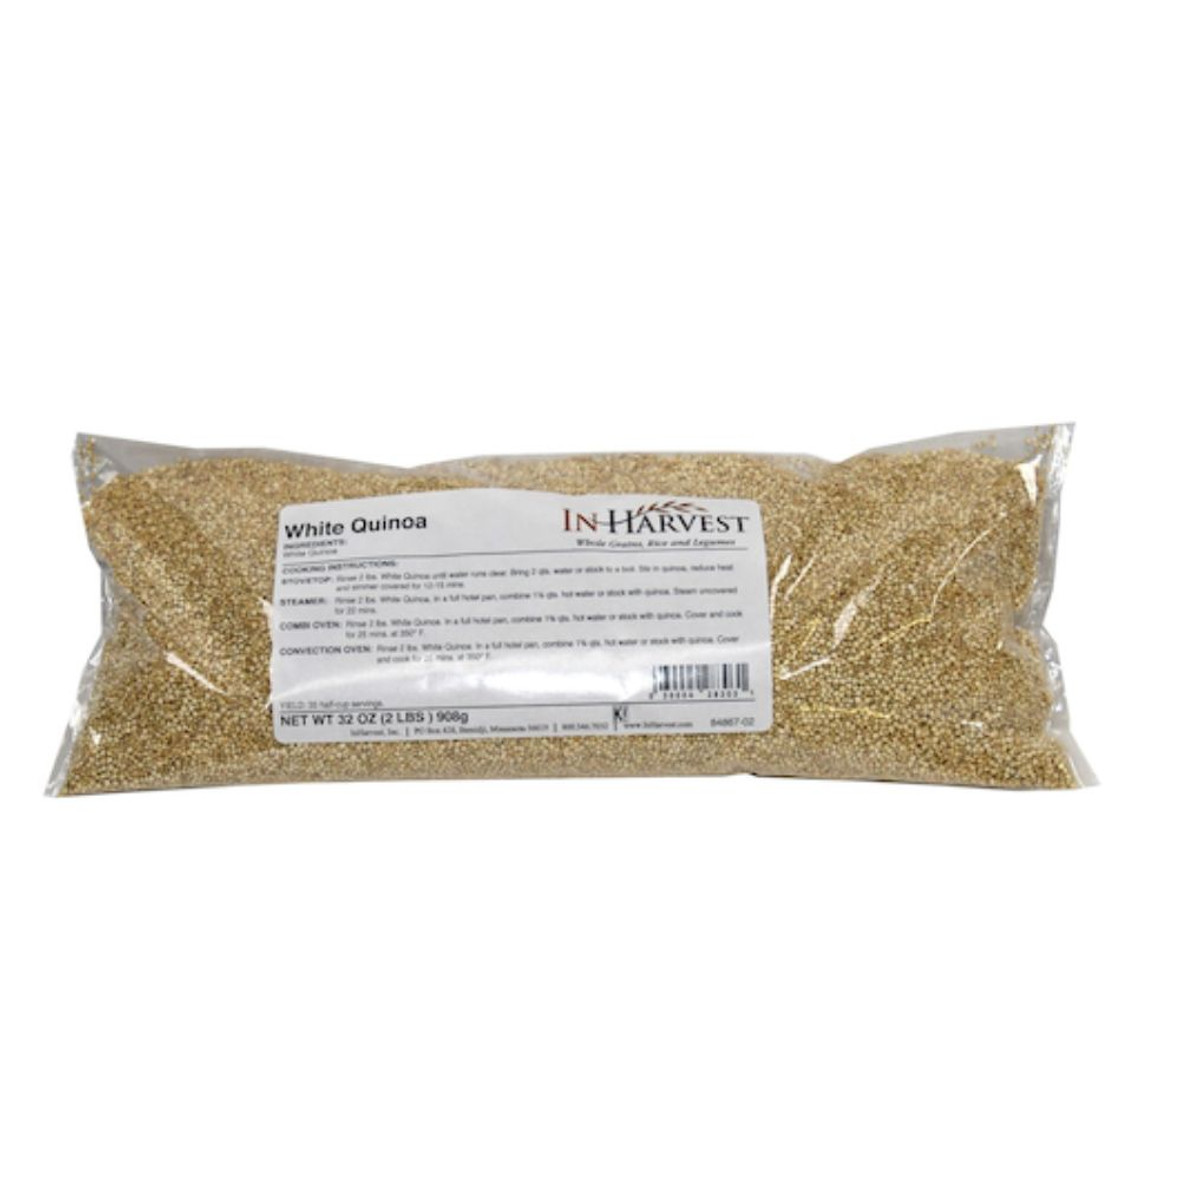 Inharvest Inc White Quinoa, 2 Pounds